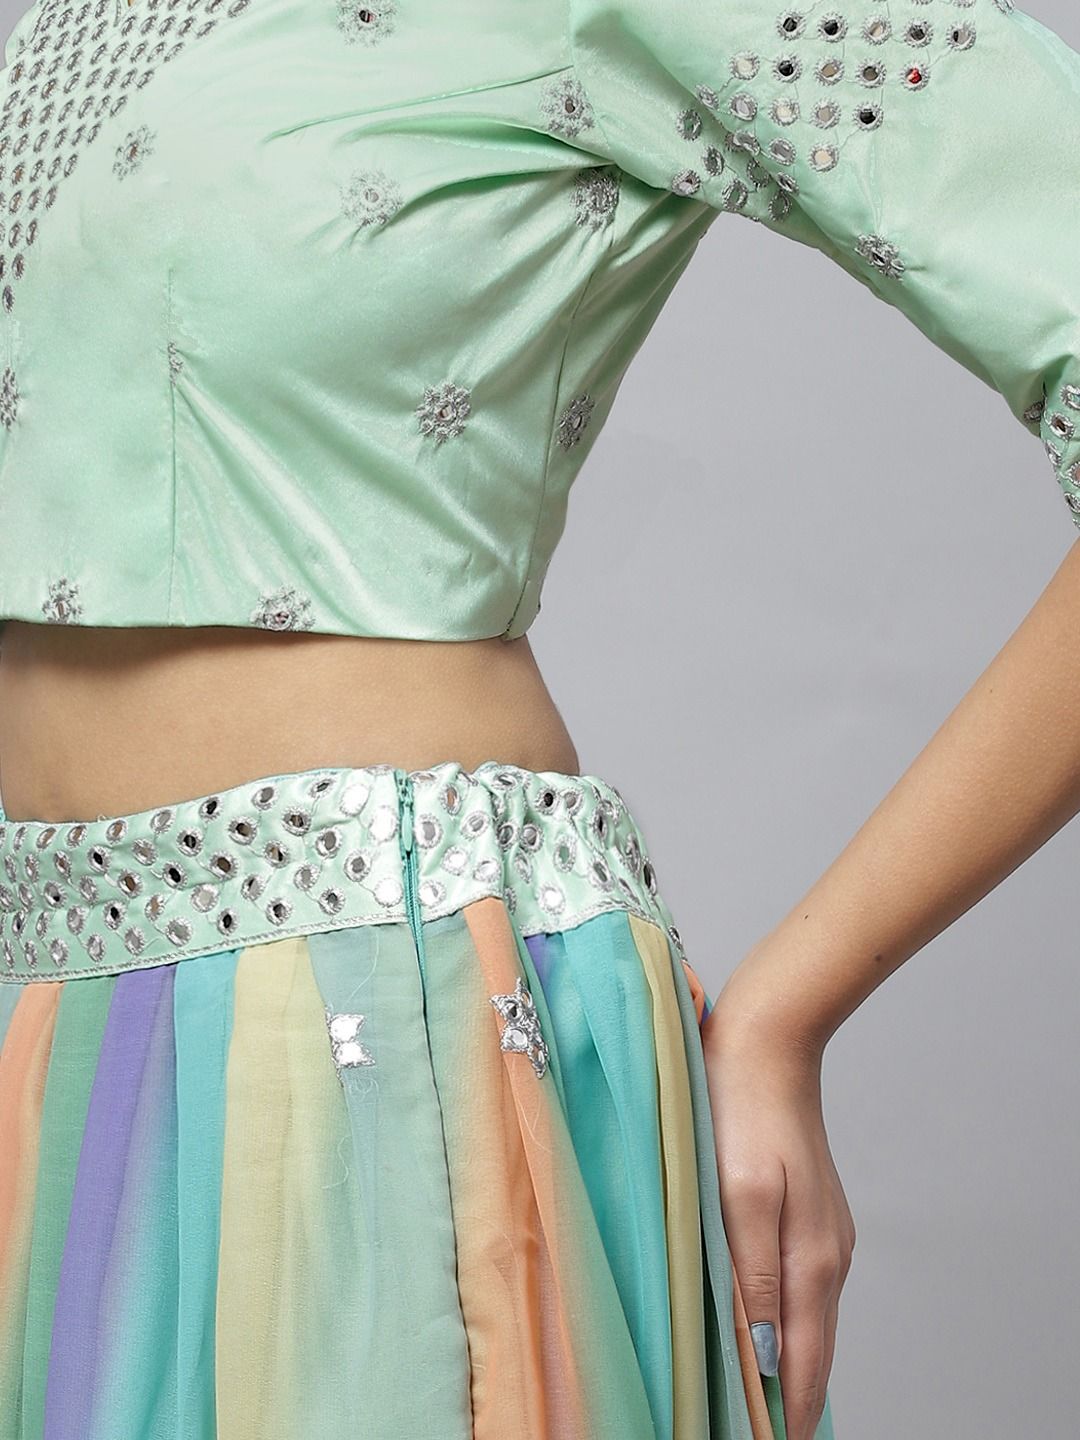 5 Sassy & Trendy Lehenga Blouse Designs By Keerthy Suresh